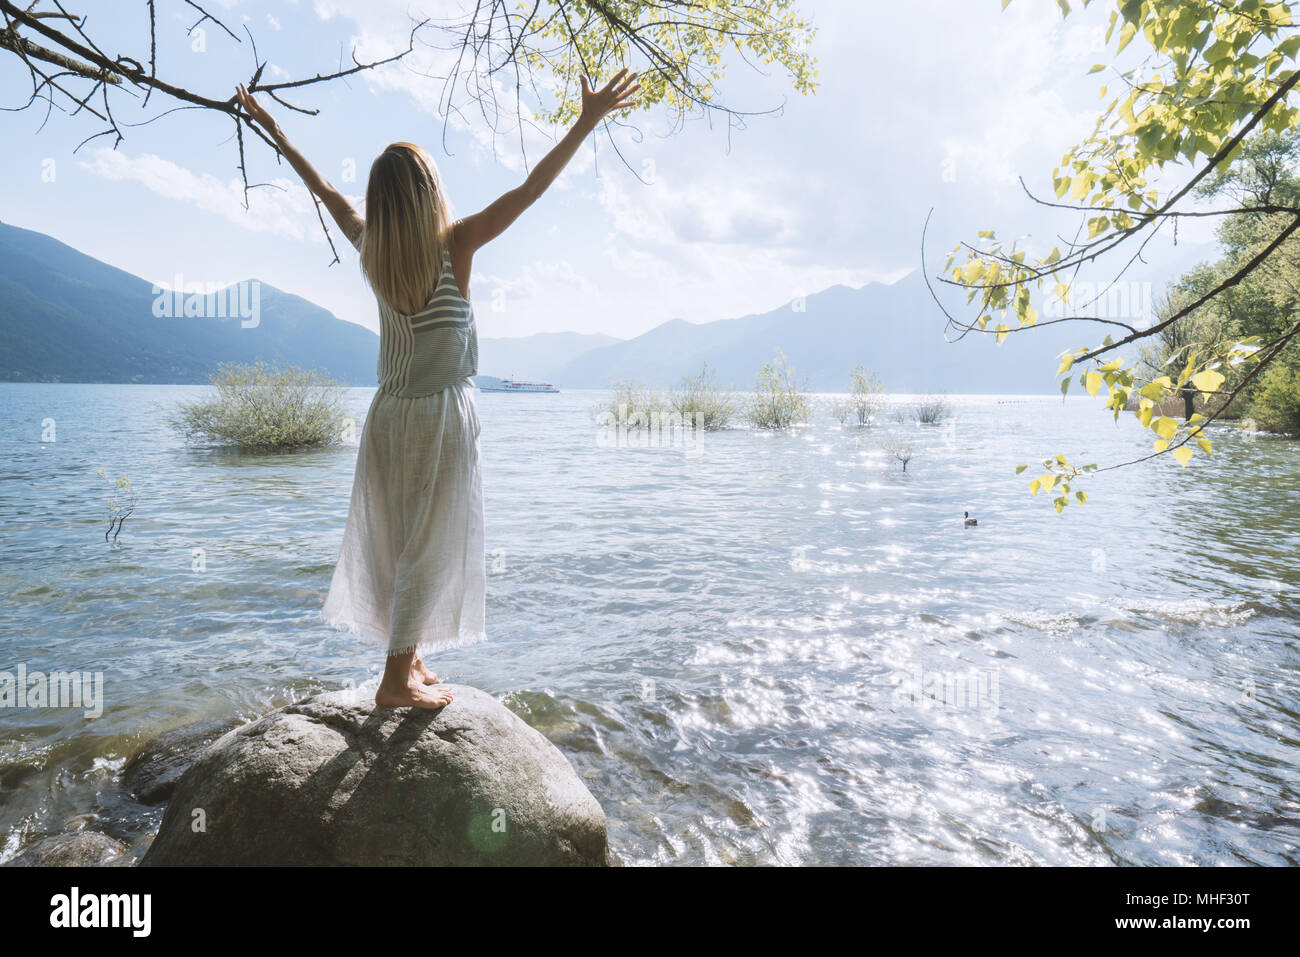 Jeune femme debout sur un rocher au-dessus du lac bras tendus pour la liberté et les émotions positives. Les gens voyagent sans souci du bien-être concept. La Suisse Banque D'Images